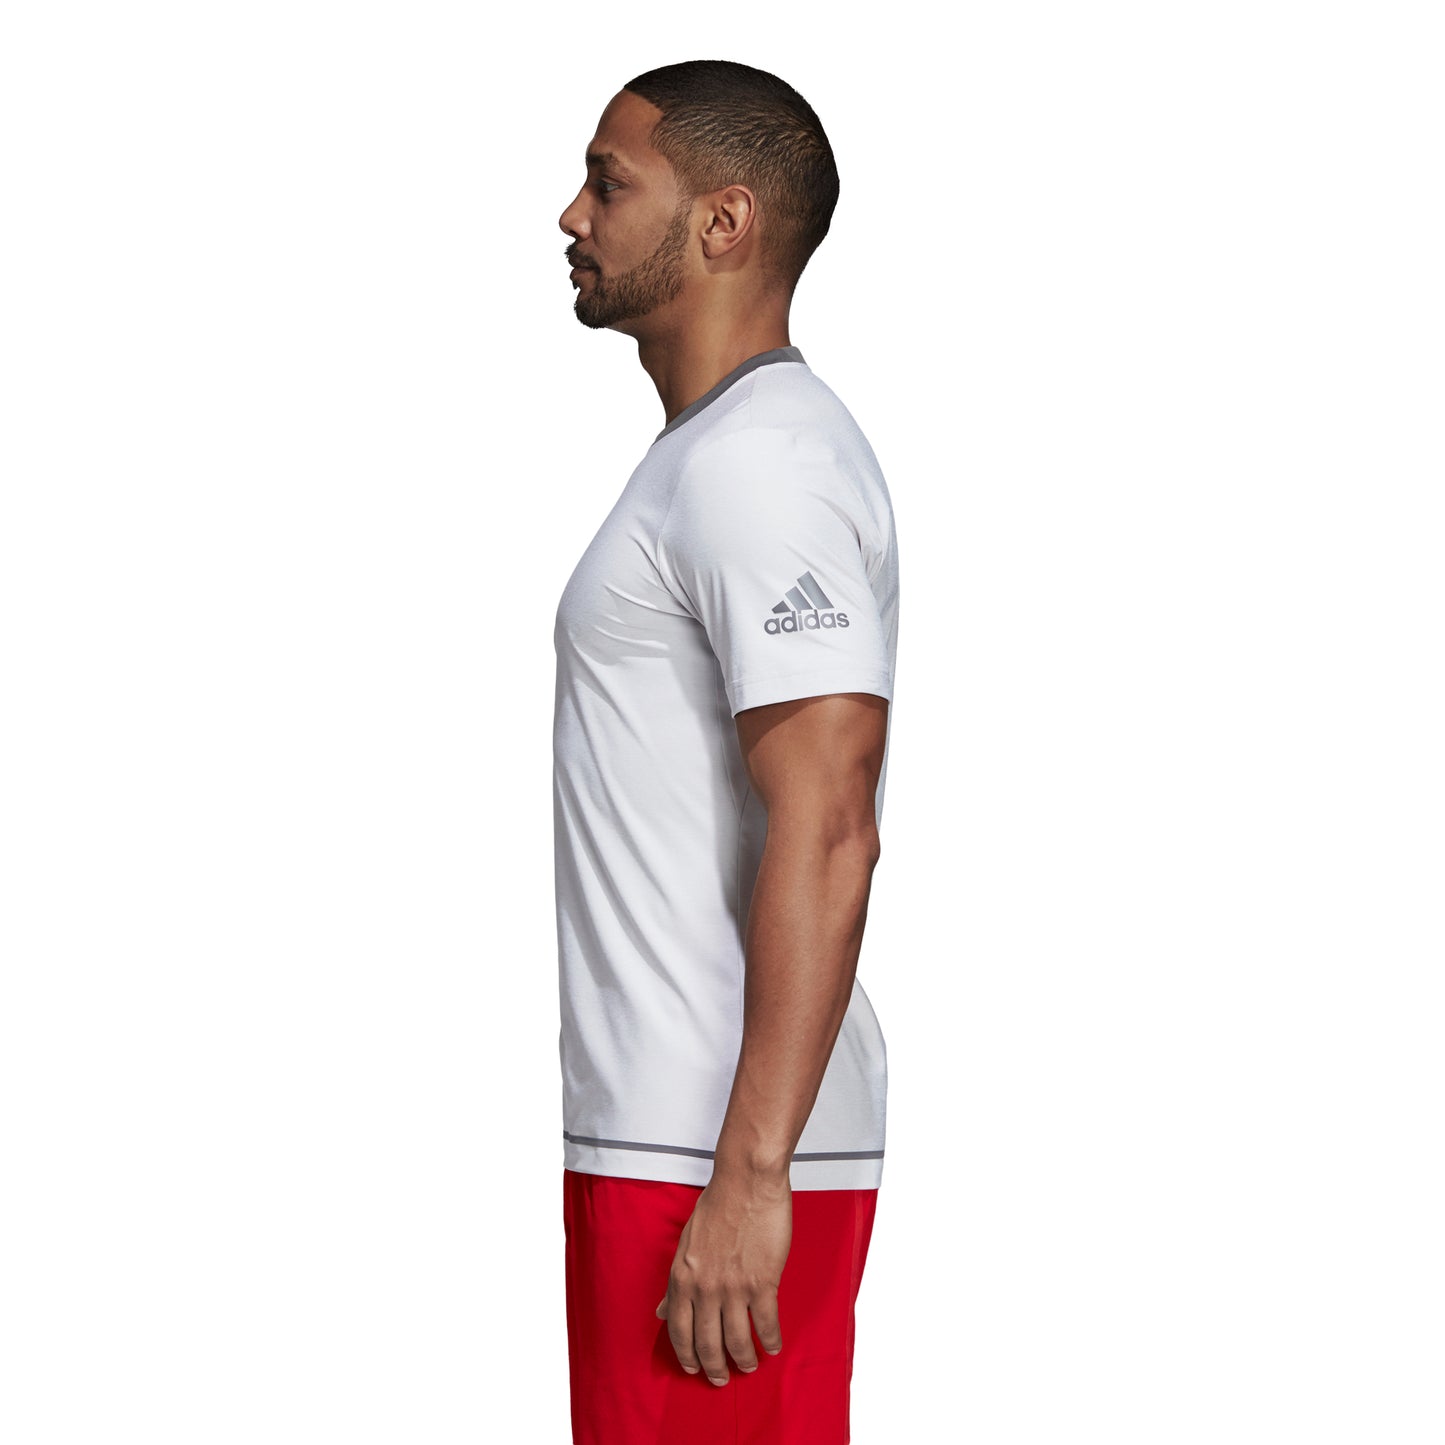 adidas Men's T-shirt Barricade - Light Grey CY3320 - VuTennis